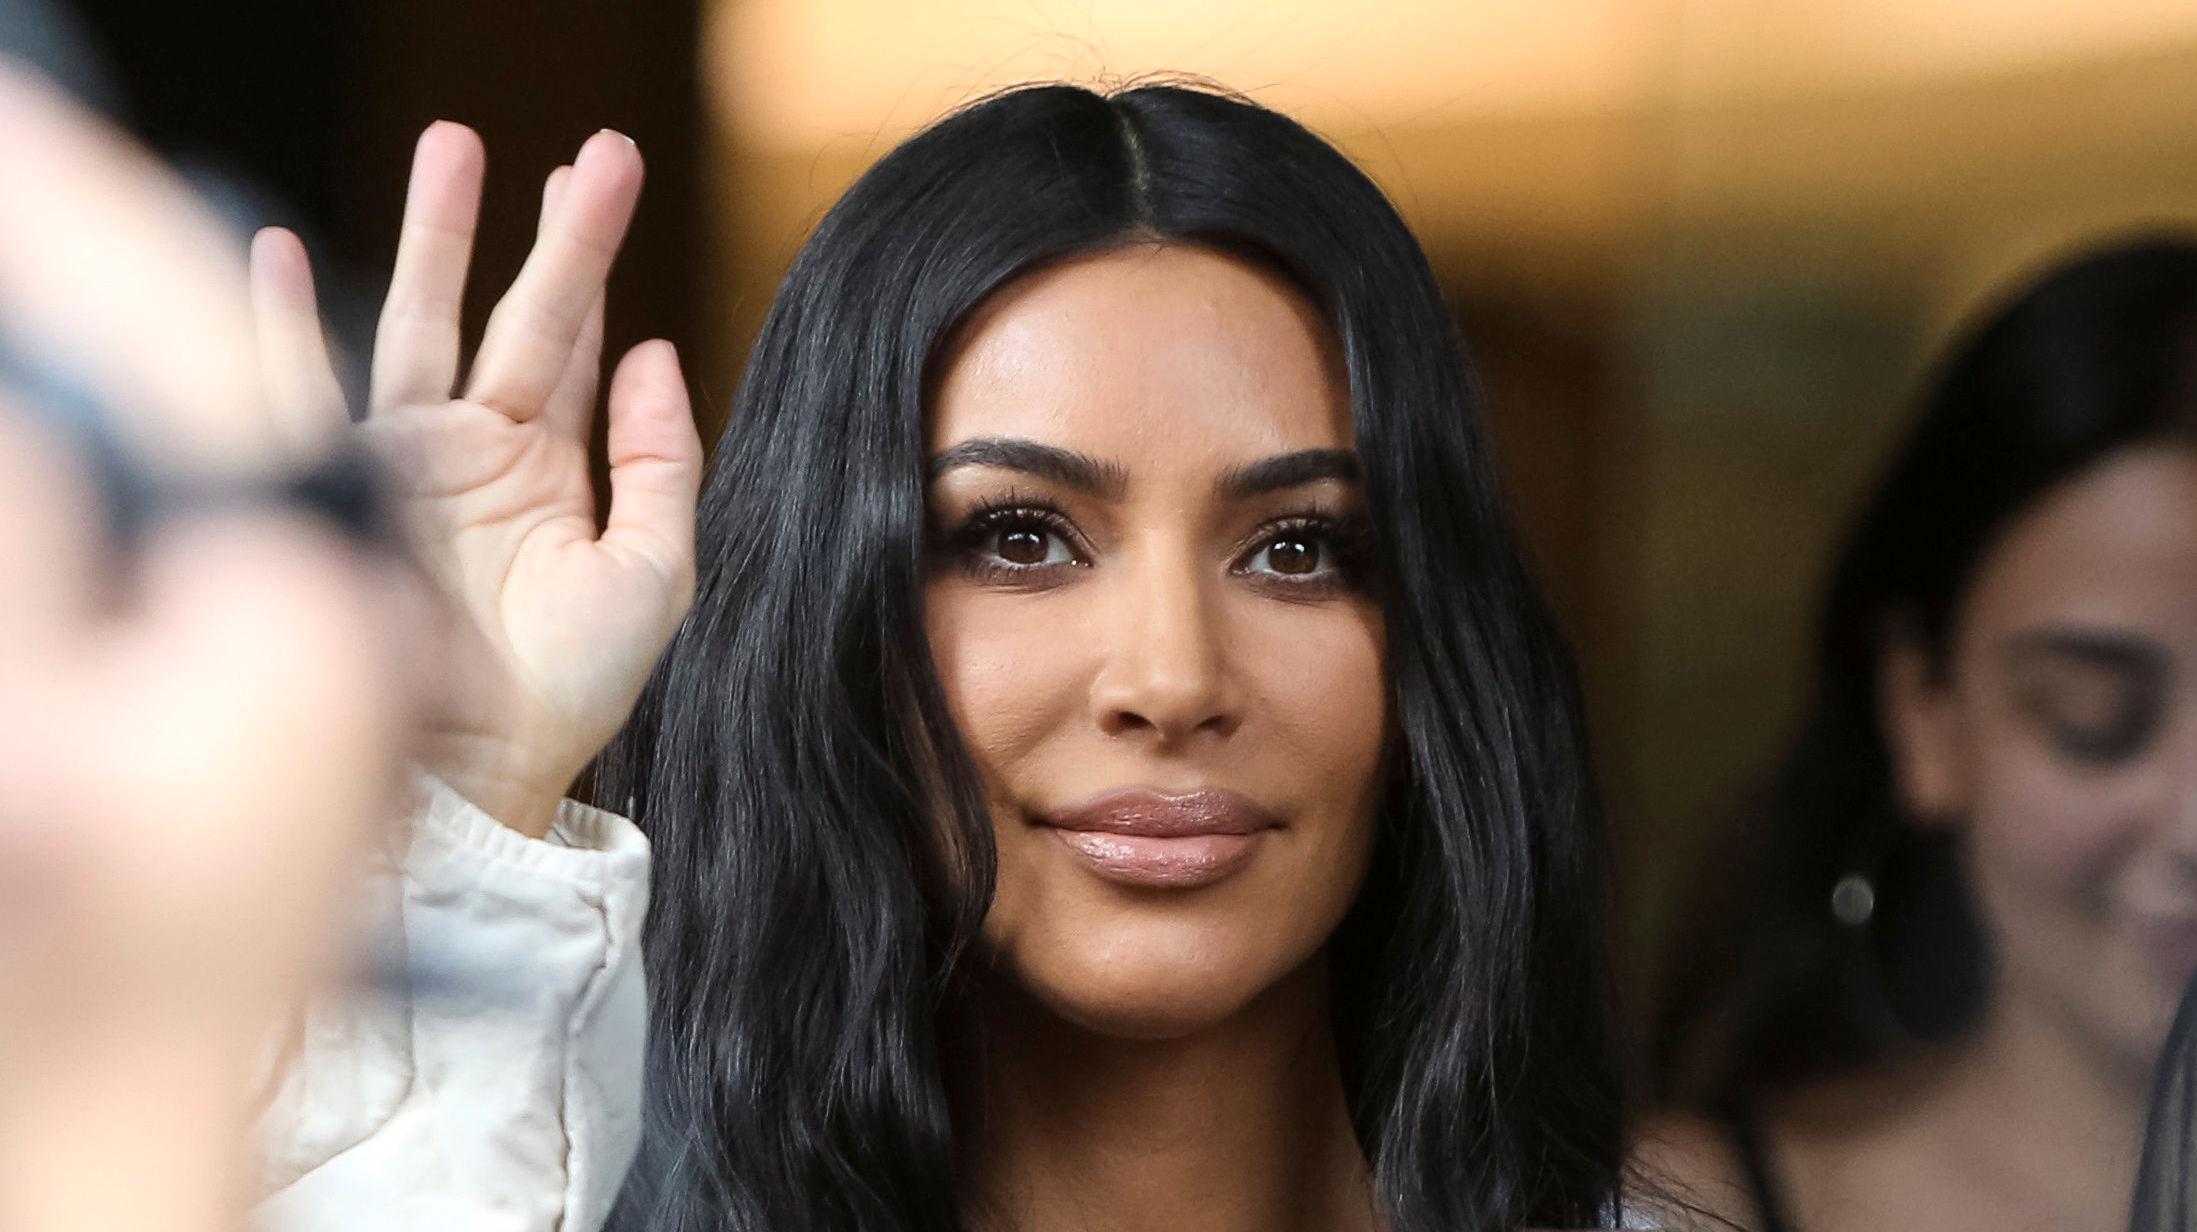 KRITIKK: Reality-stjerne og designer Kim Kardashian West (39) får kritikk for munnbind hun og hennes merke Skims nylig lanserte. Foto: Reuters